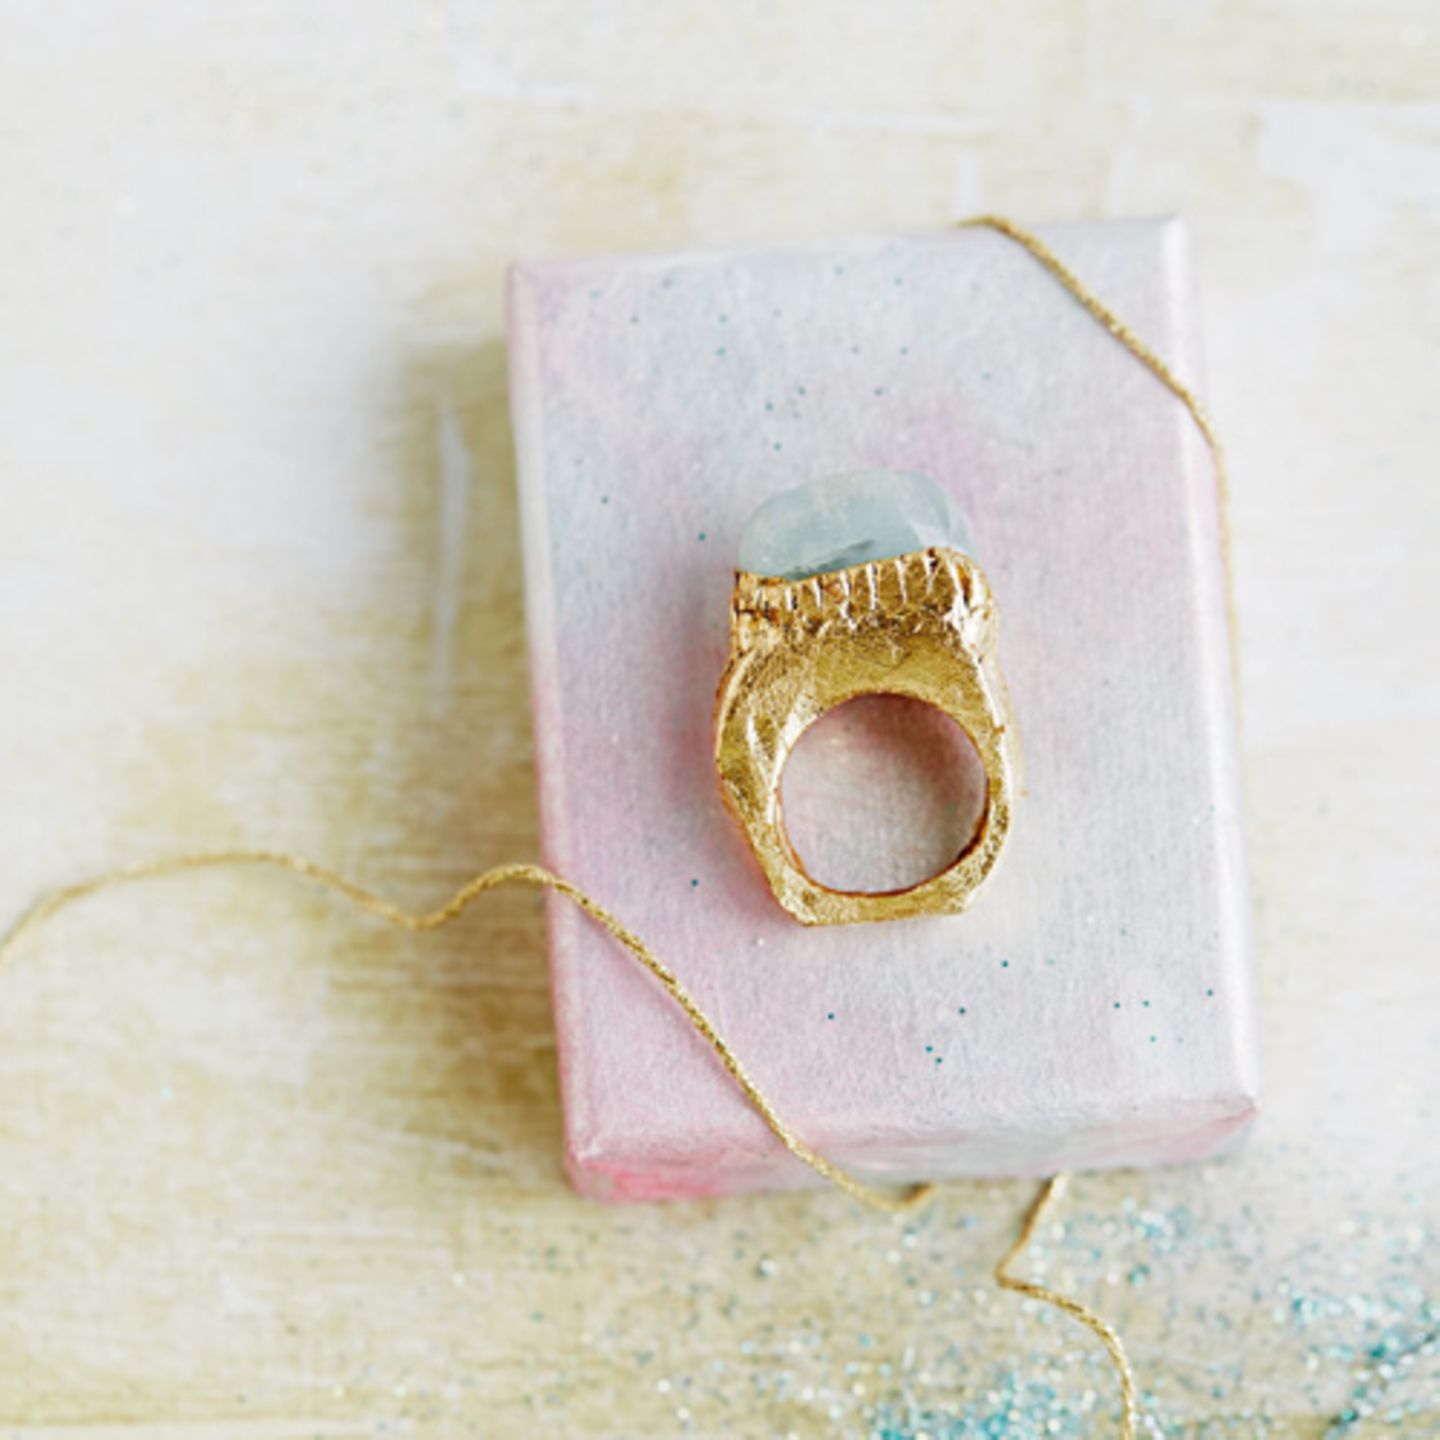 Wer selbstgemachten Schmuck mag, sollte sich einmal diesen Fimo-Ring anschauen. Denn den können Sie ganz einfach selber machen. Zur Anleitung Fimo-Ring selber machen.